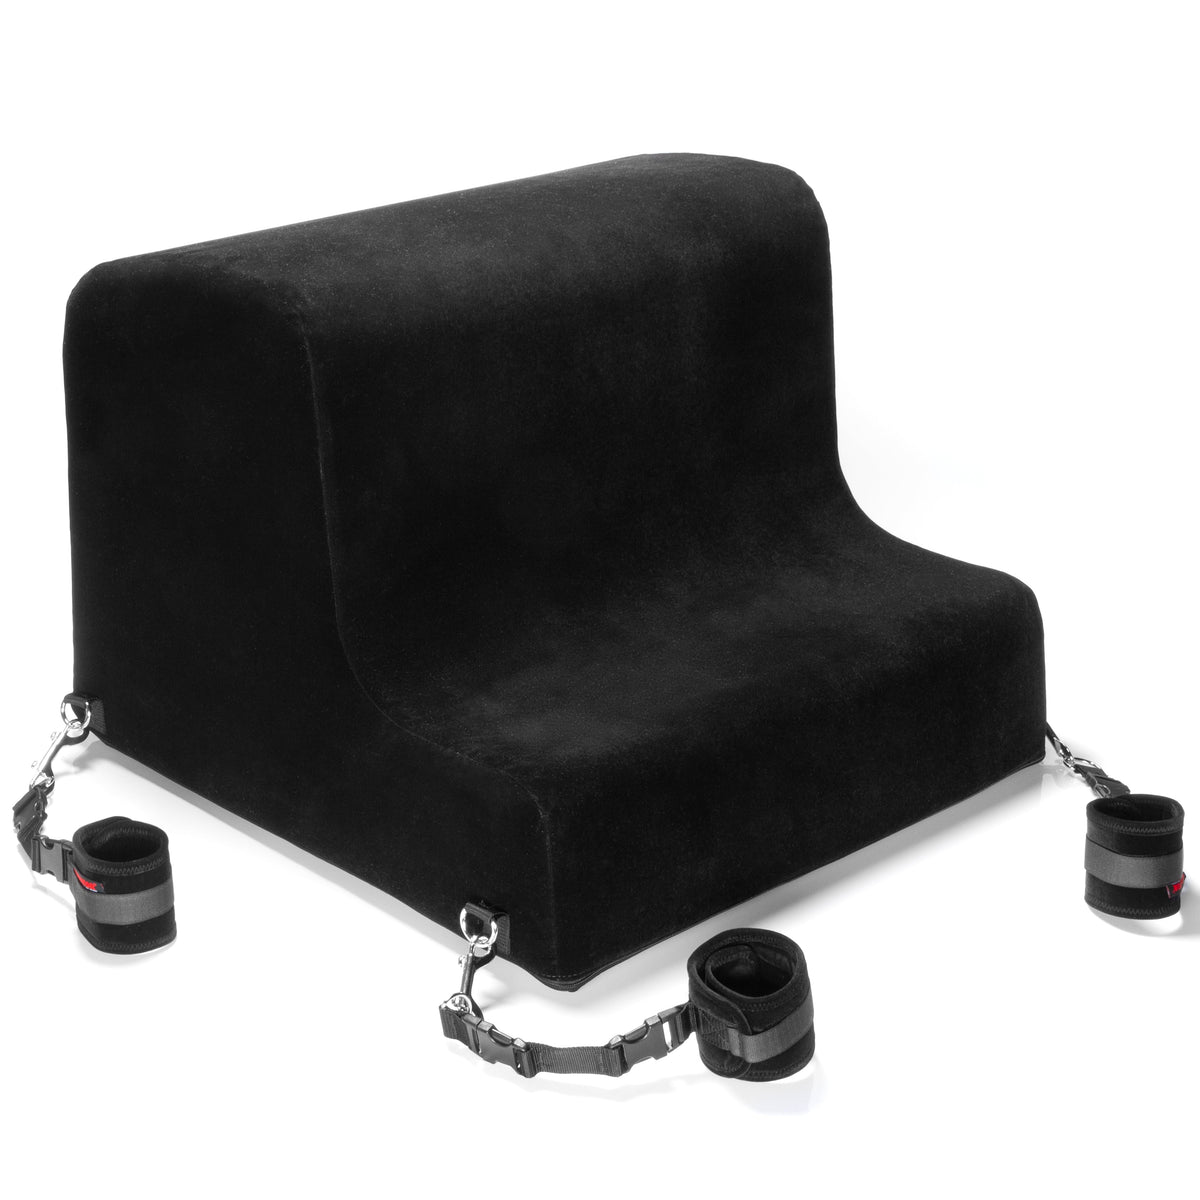 Obéir Spanking Bench W/Cuffs Microfiber - non retail box